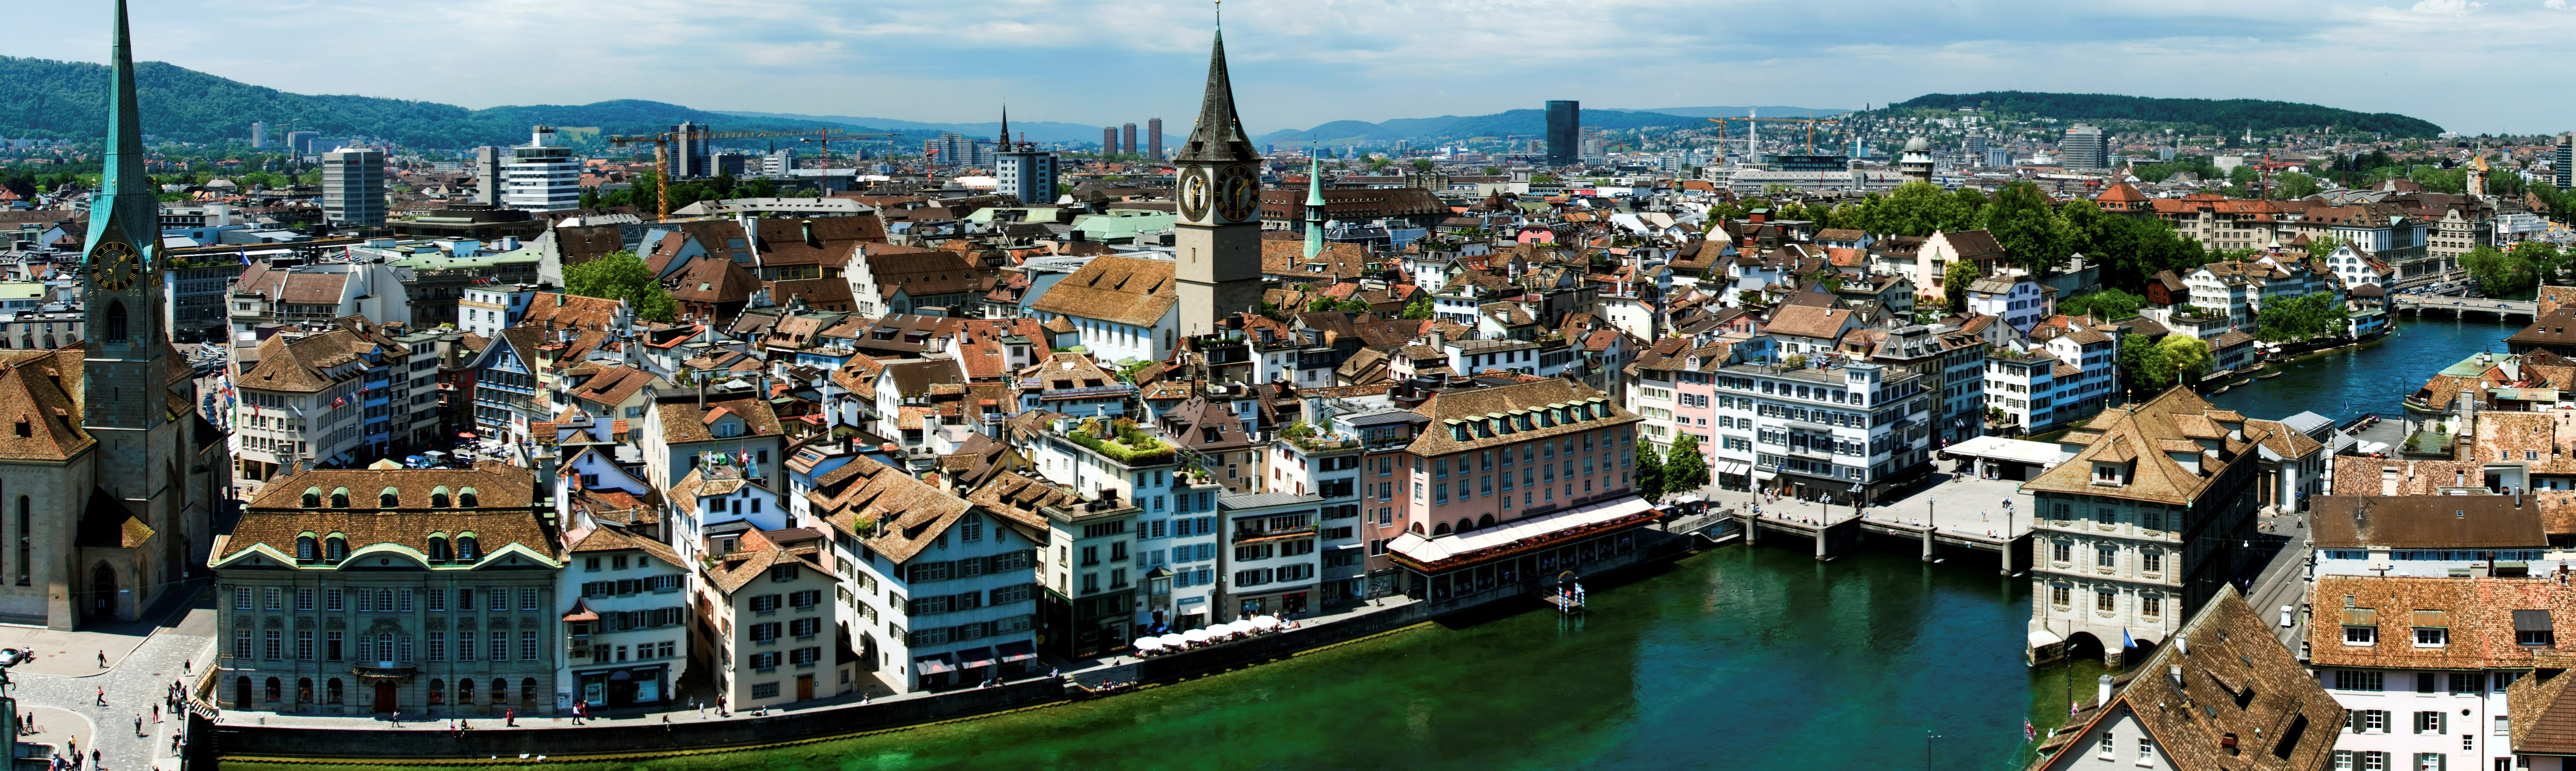 Management Training Courses in Zurich, Switzerland, Europe